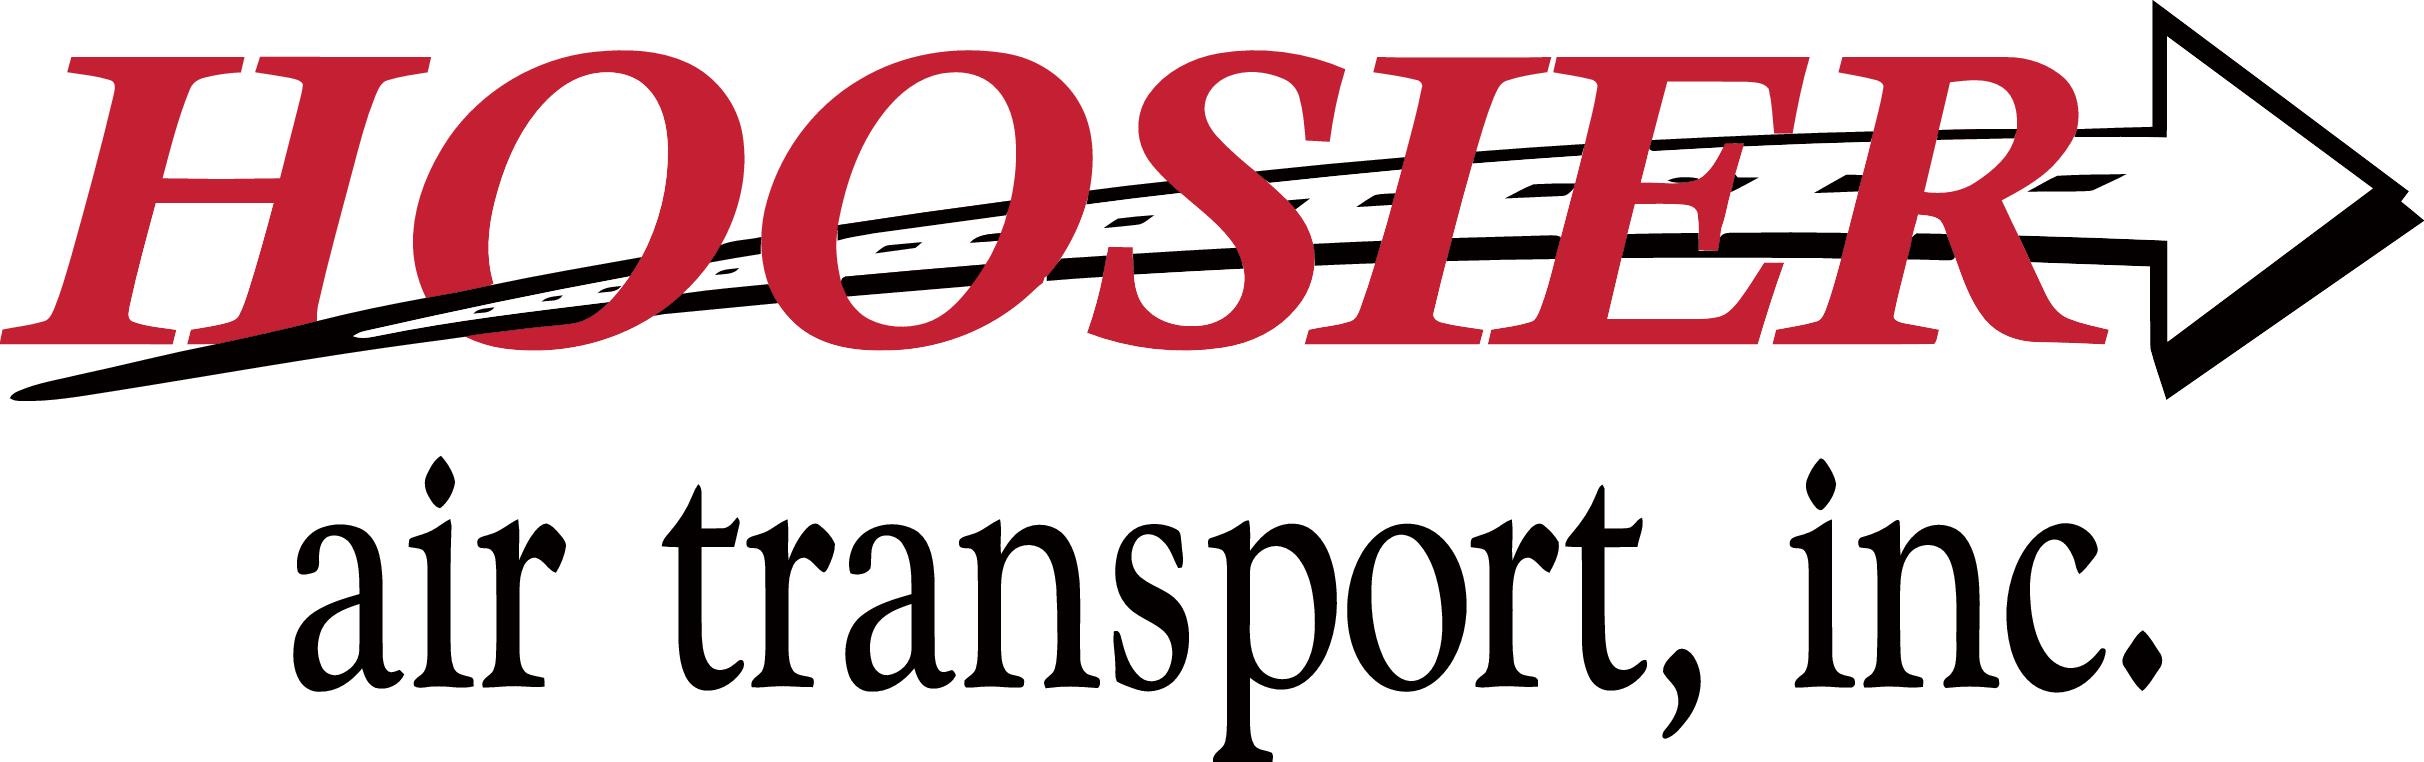 Hoosier Air Transport